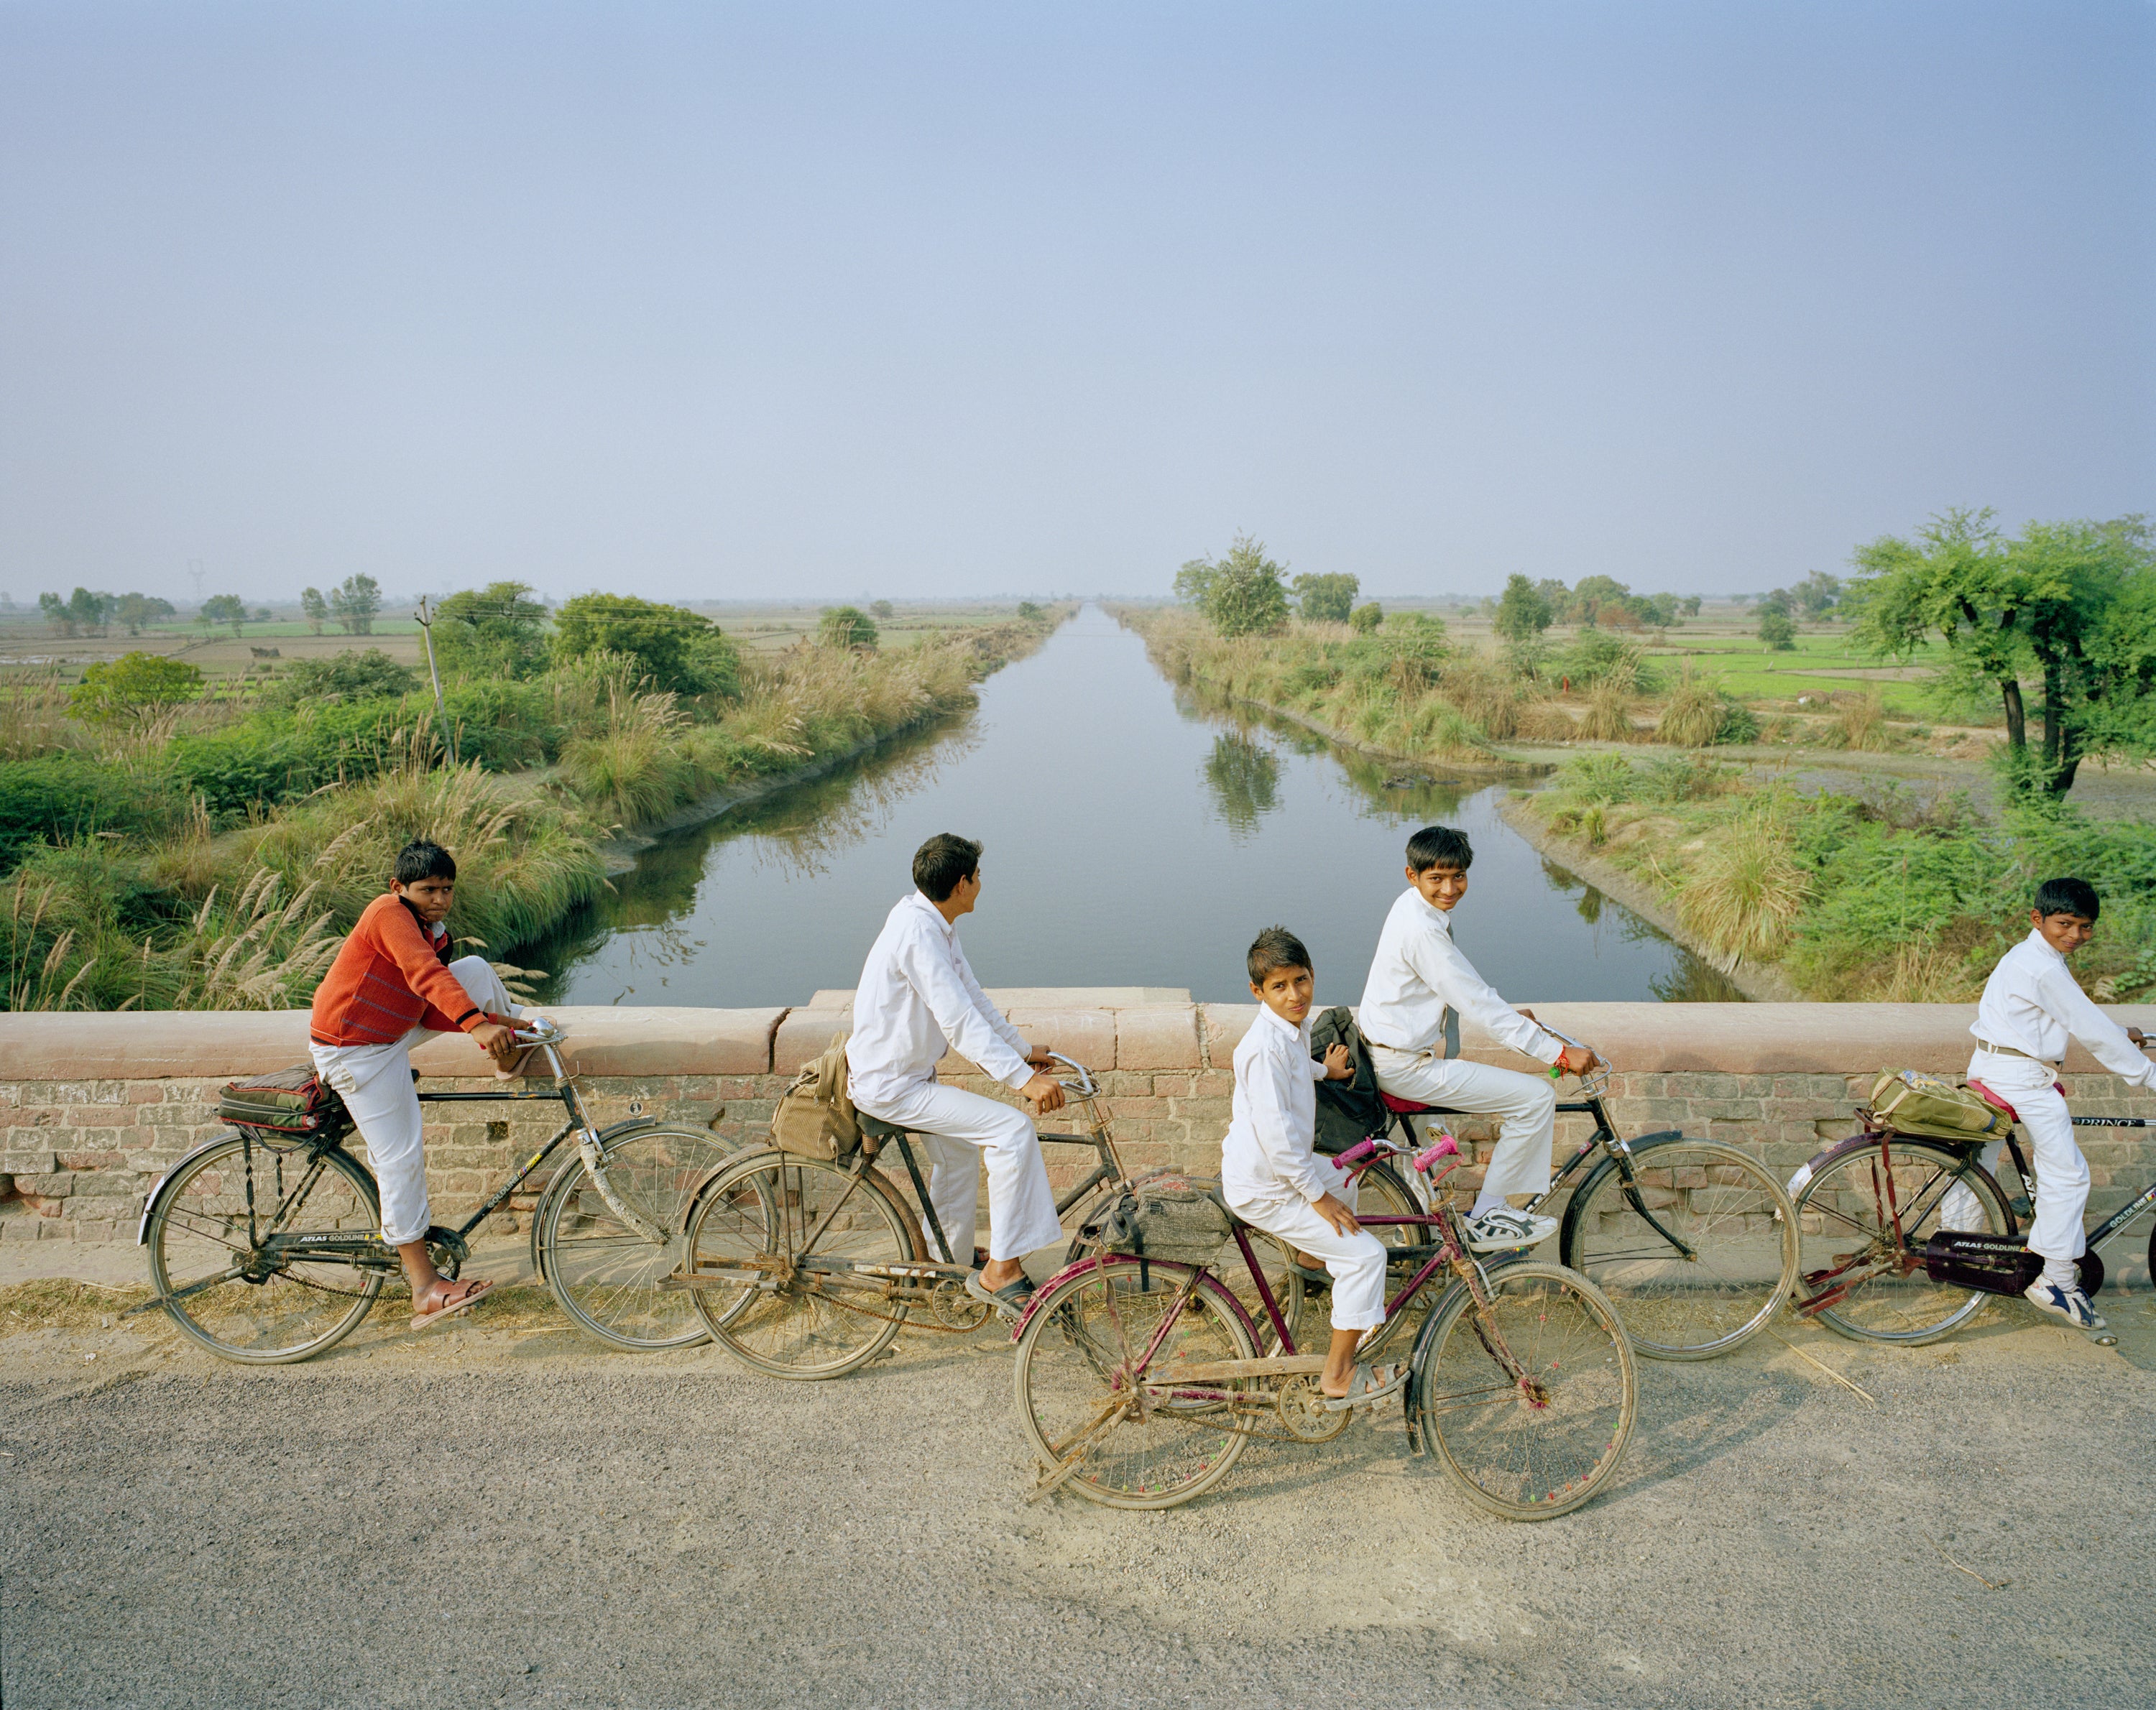 Schoolchildren on their way home in Vraja, Uttar Pradesh #5/8